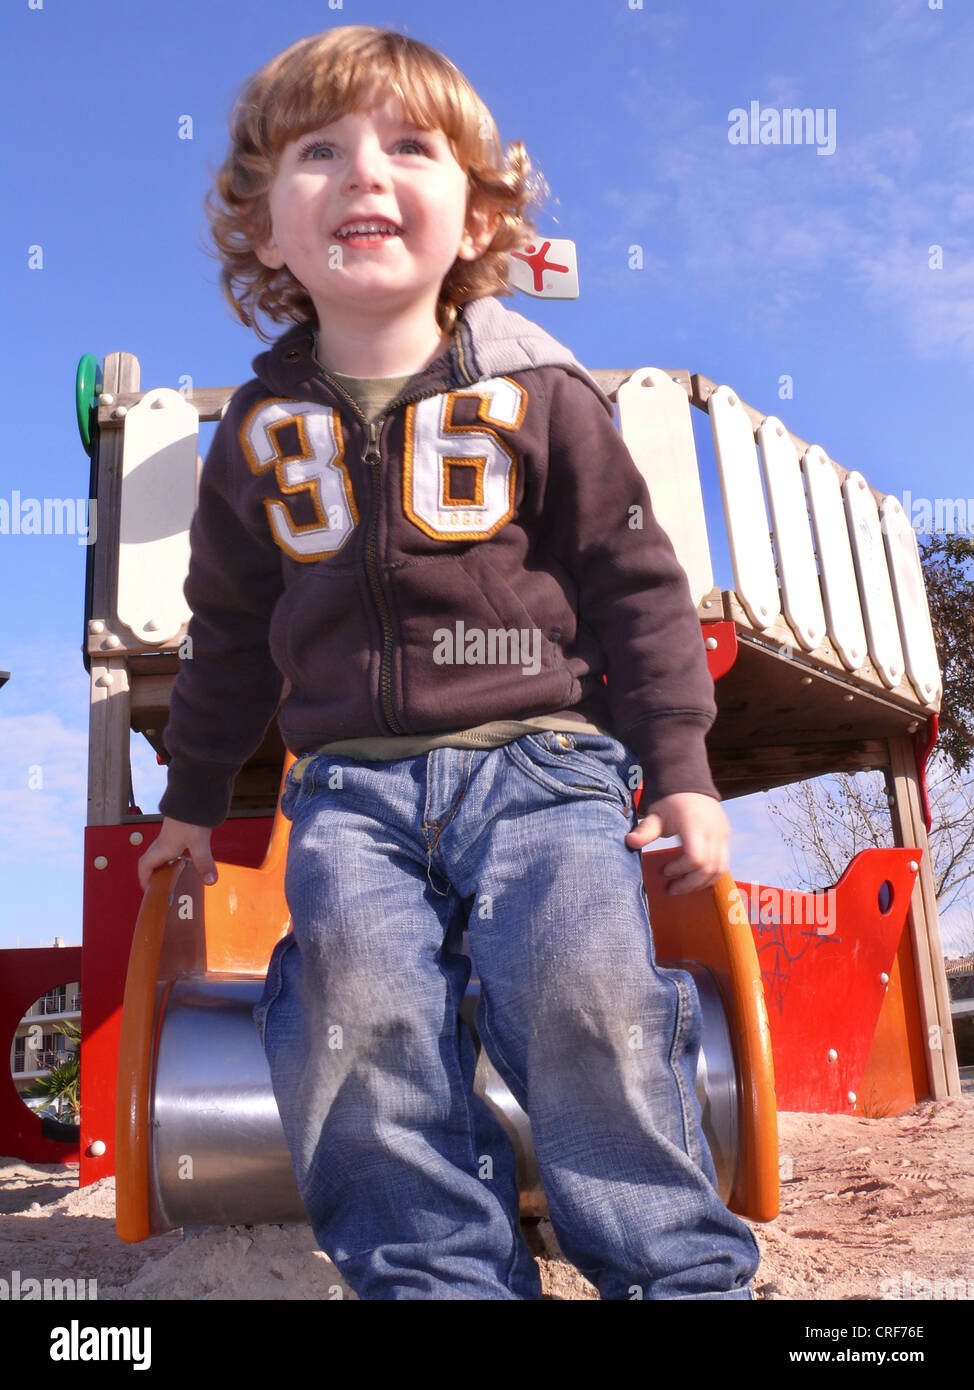 kleiner Junge stand vor einer Scheibe auf einem Spielplatz Stockfoto